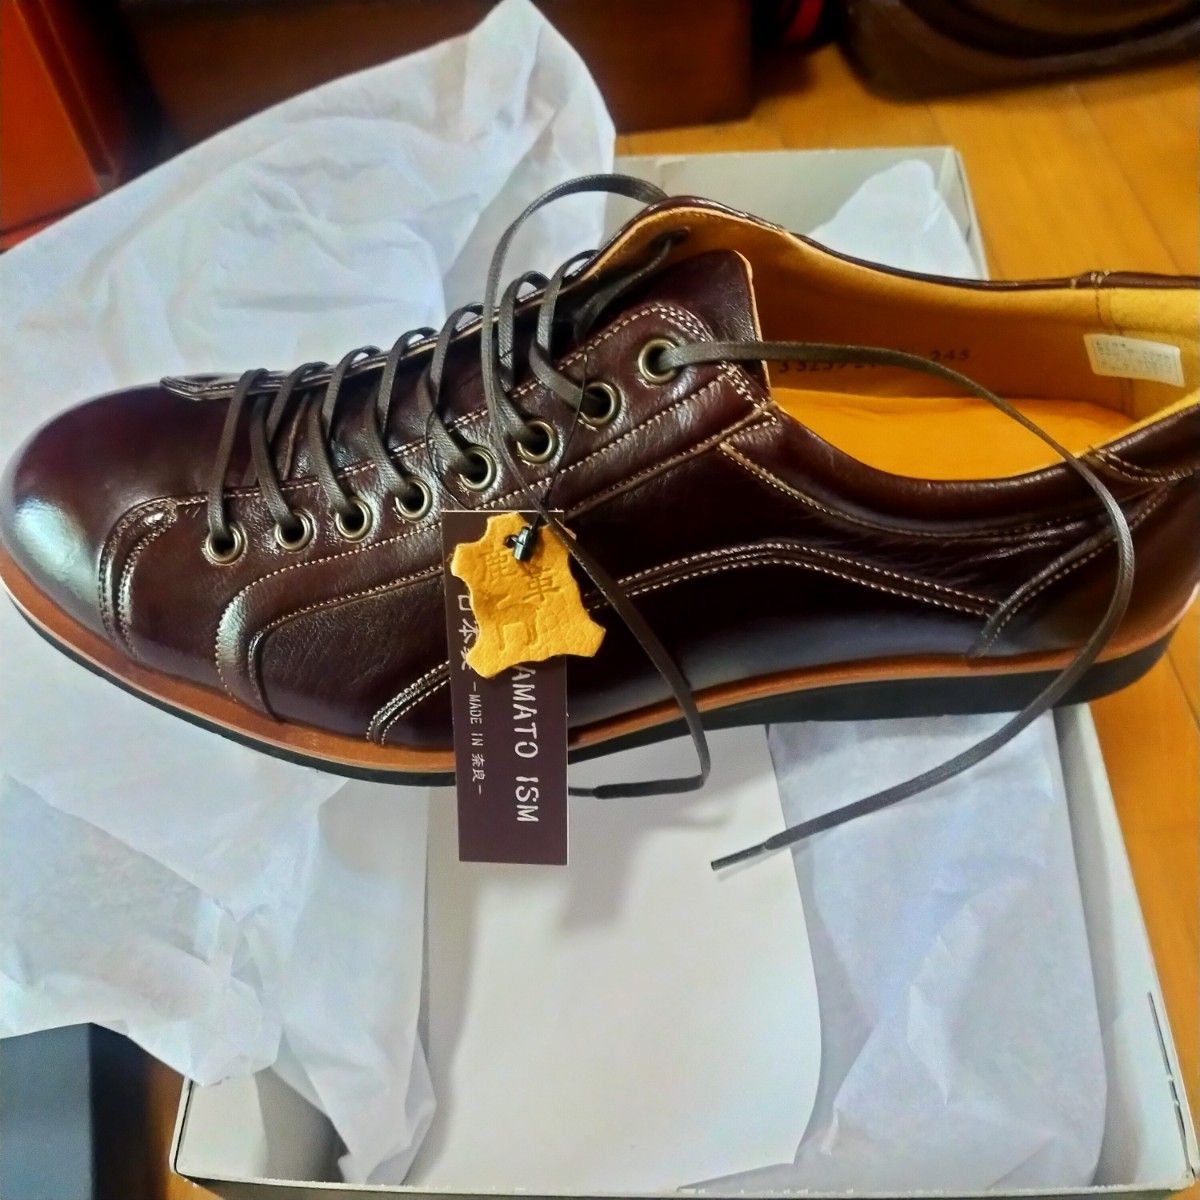 ヤマトイズム 紳士靴 革靴 メンズ カジュアルシューズ 本革 日本製 軽量 クッション 鹿革 通気性サイズ24.5